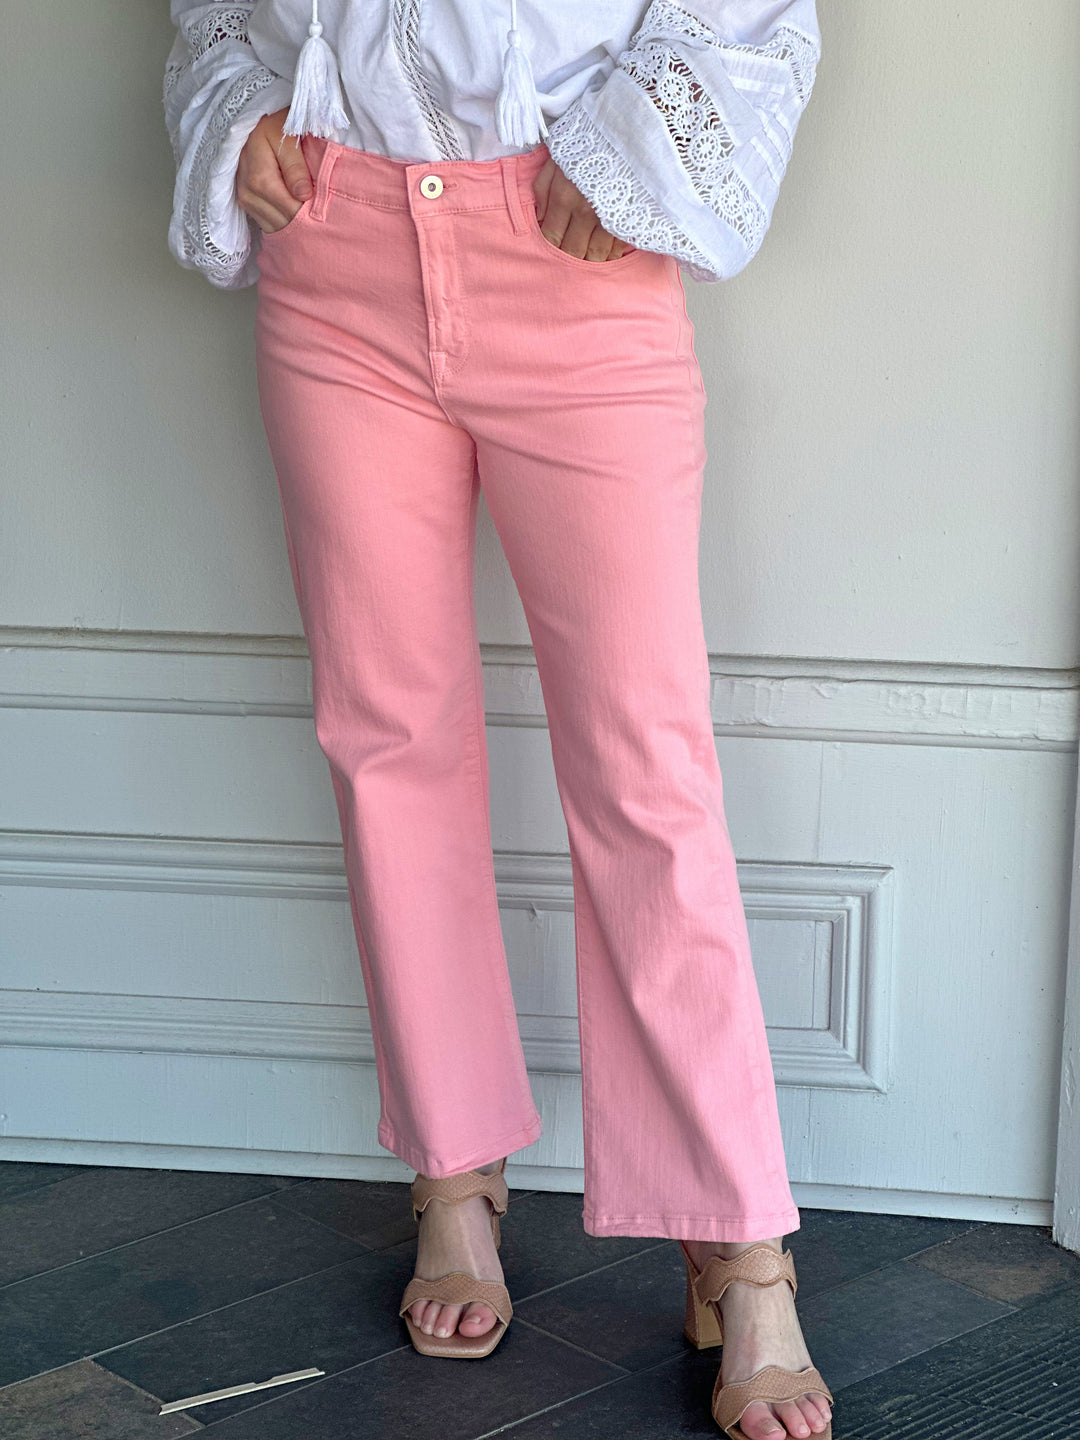 Elliott Lauren Spring Pink Jean